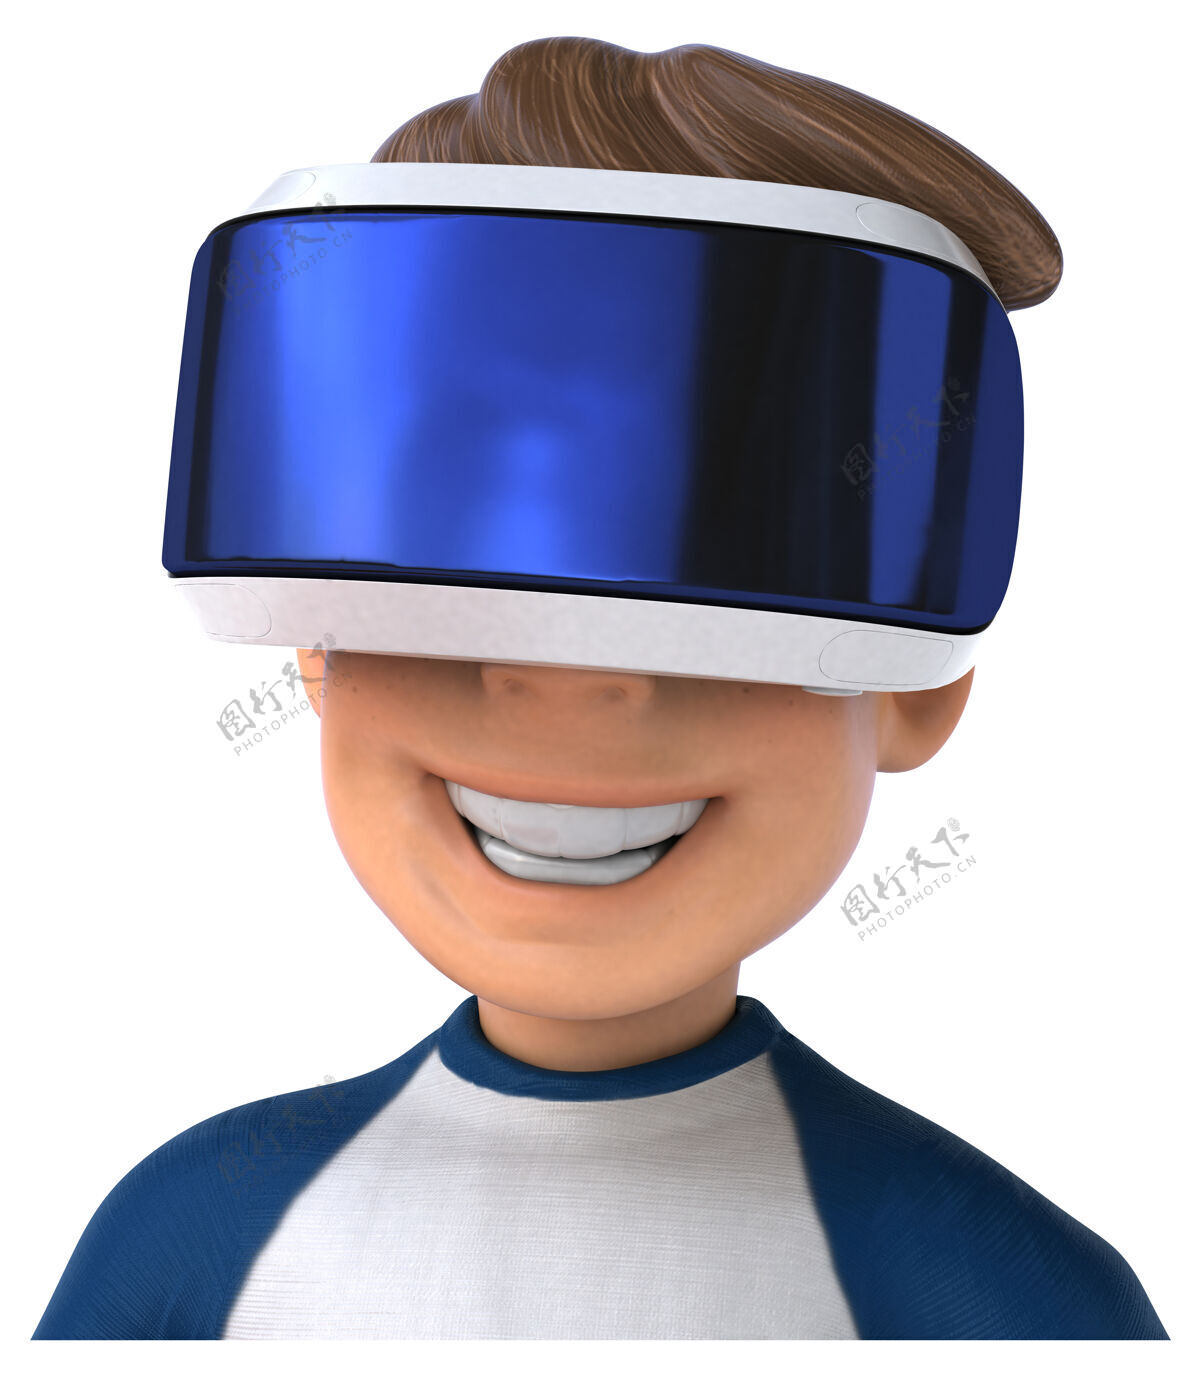 播放器有趣的卡通儿童与虚拟现实头盔插图体验设备现实